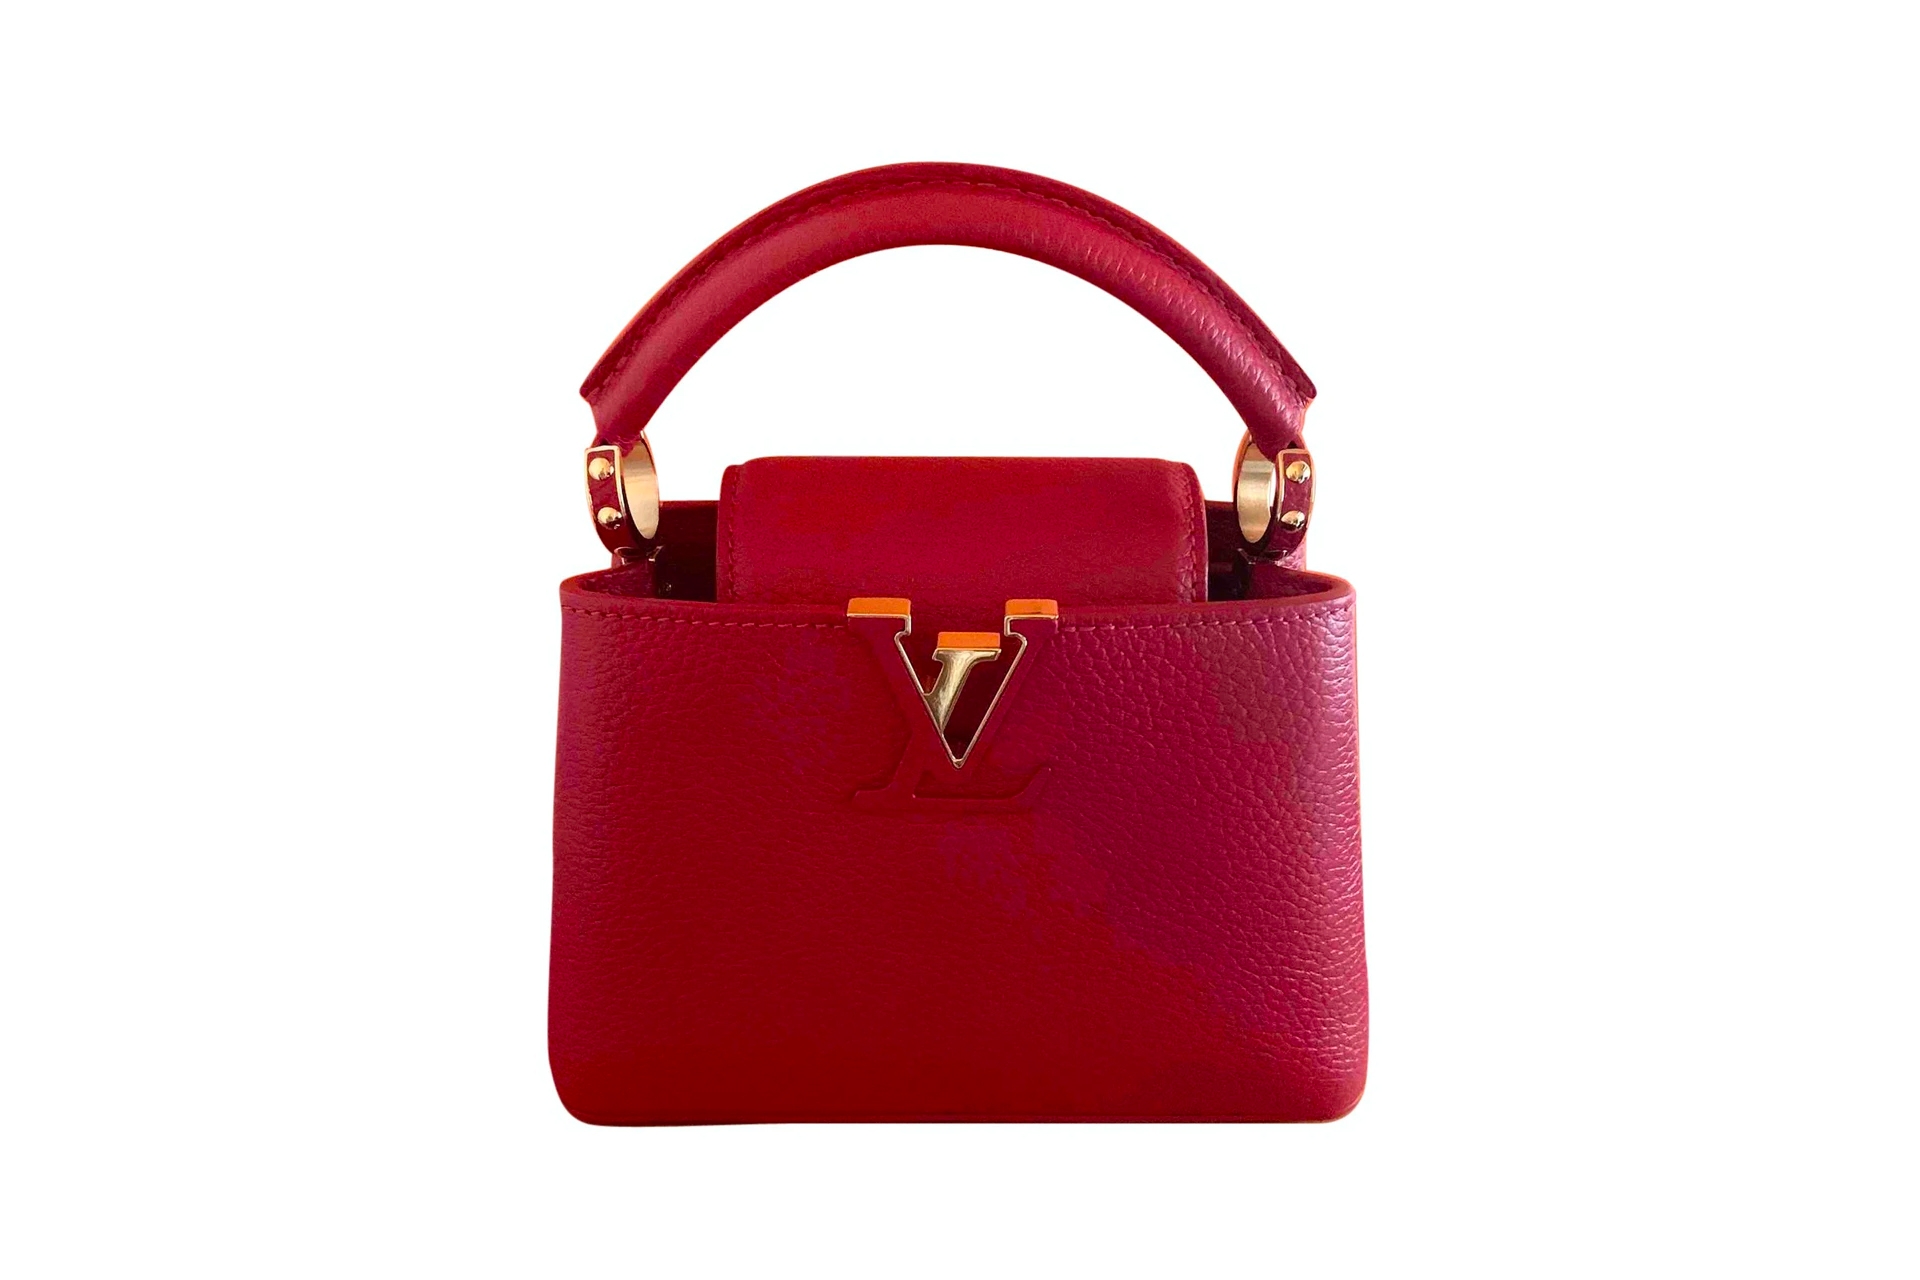 Louis Vuitton Limited Edition Cognac Empreinte Leather Stephen Bag., Lot  #58330